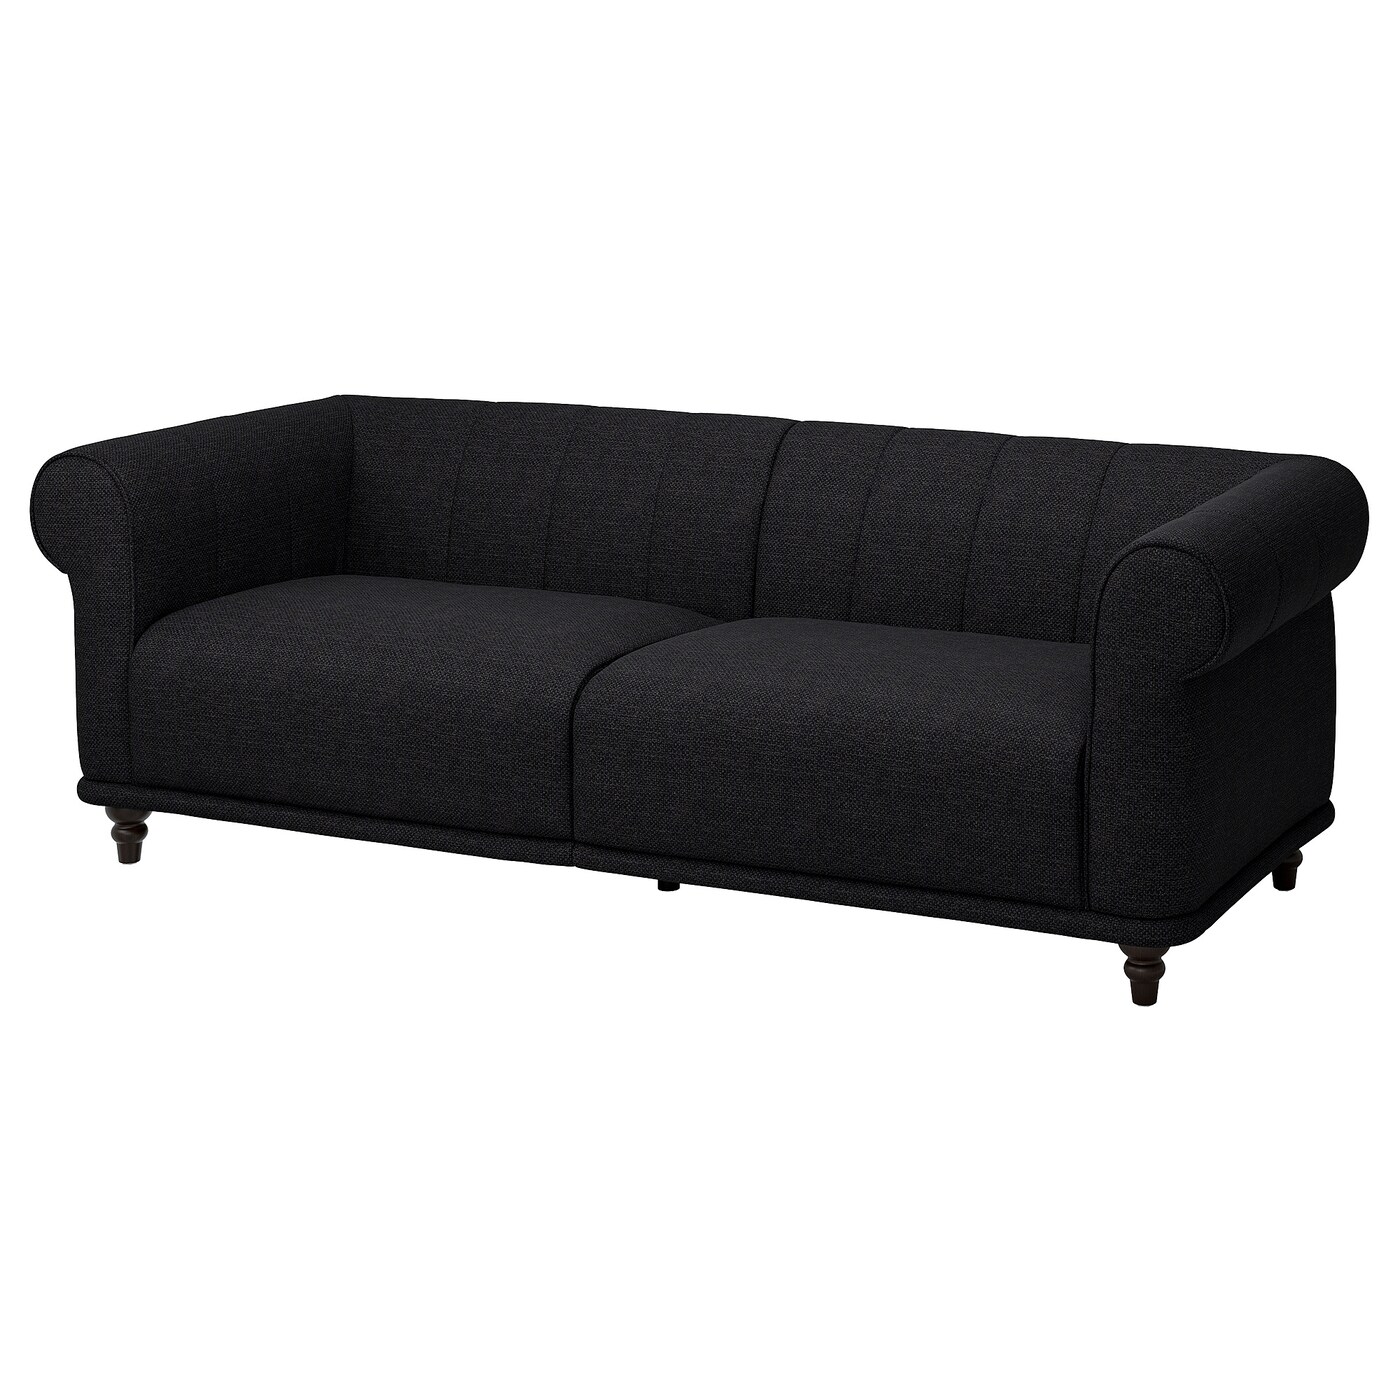 VISKAFORS 3-місний диван - Lejde антрацит / коричневий